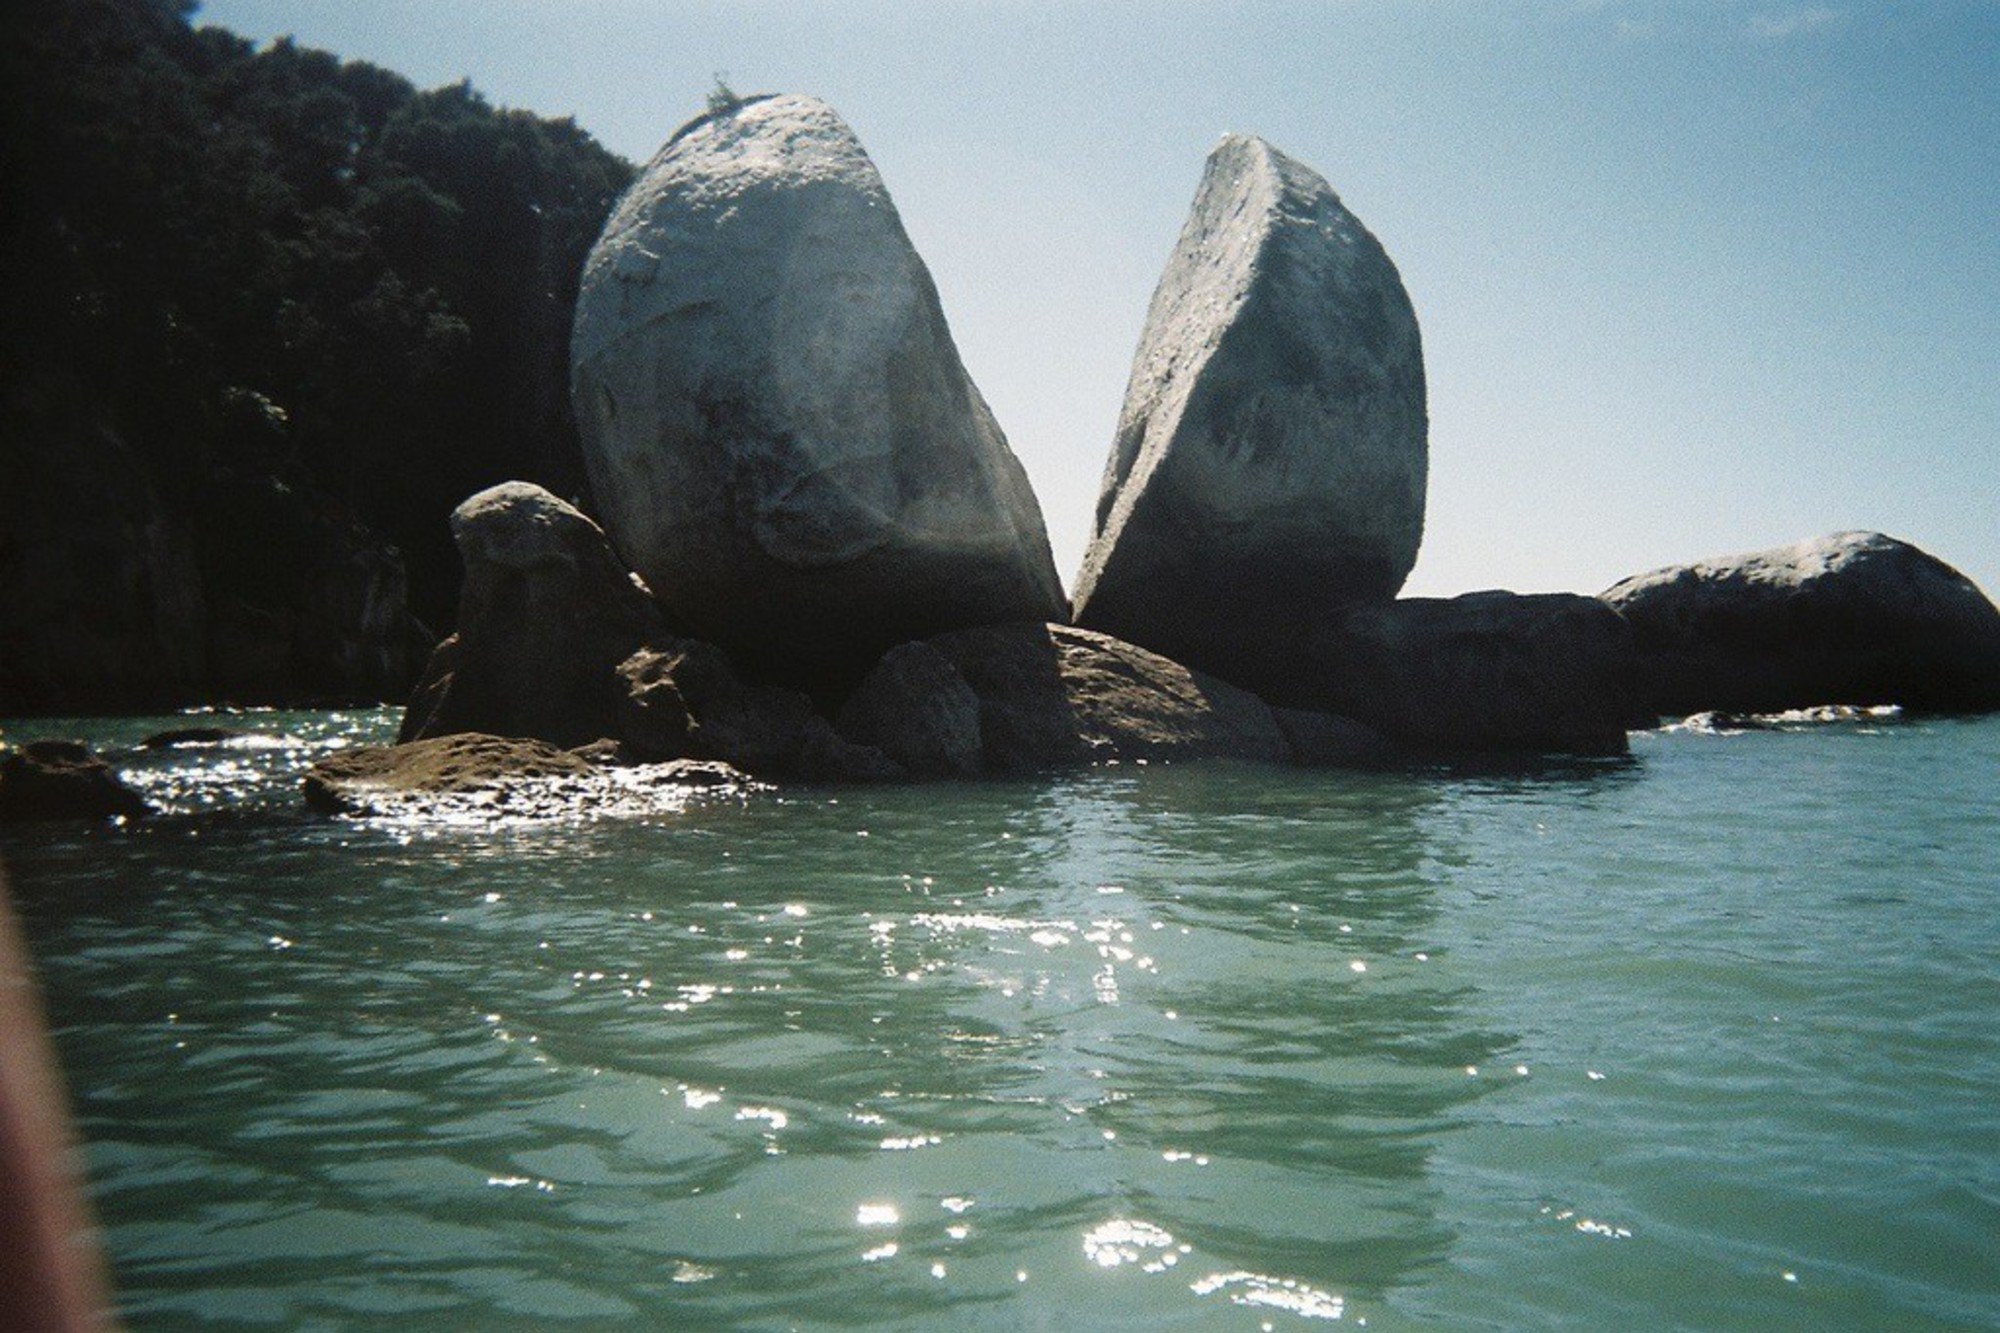 Пошла вода на камень. Камни в воде. Вода камень точит. Капля камень точит. Камень сточенный водой.